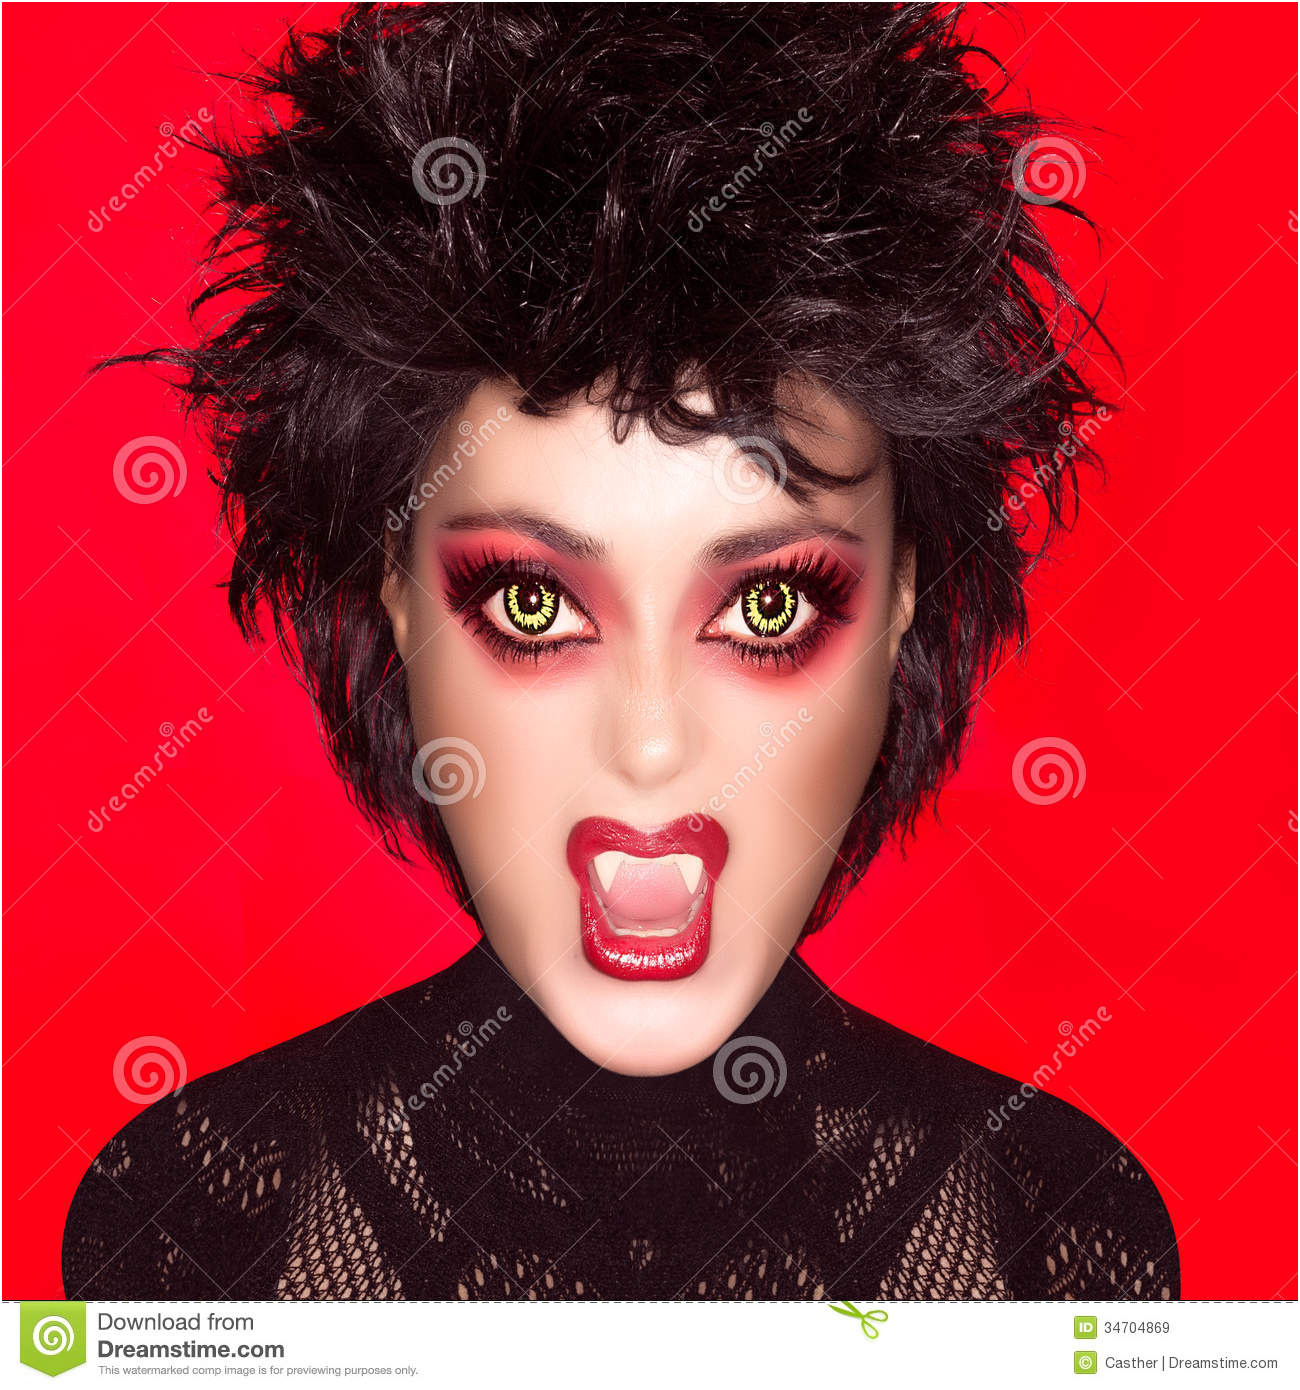 images libres de droits belle fille gothique maquillage de vampire caricature image